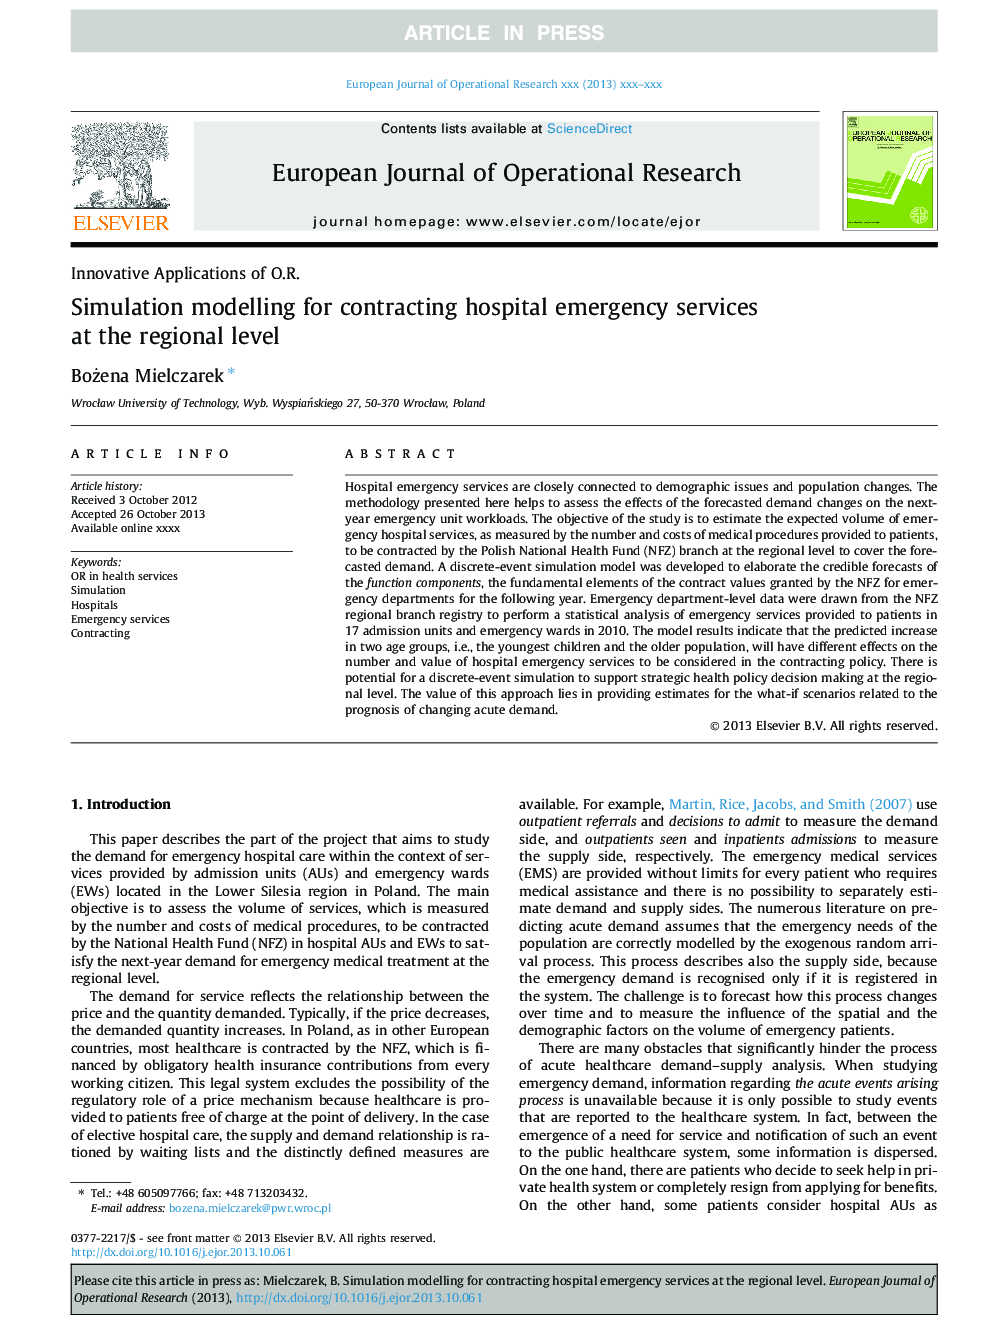 مدل سازی شبیه سازی برای قرارداد خدمات اورژانس بیمارستان در سطح منطقه ای 